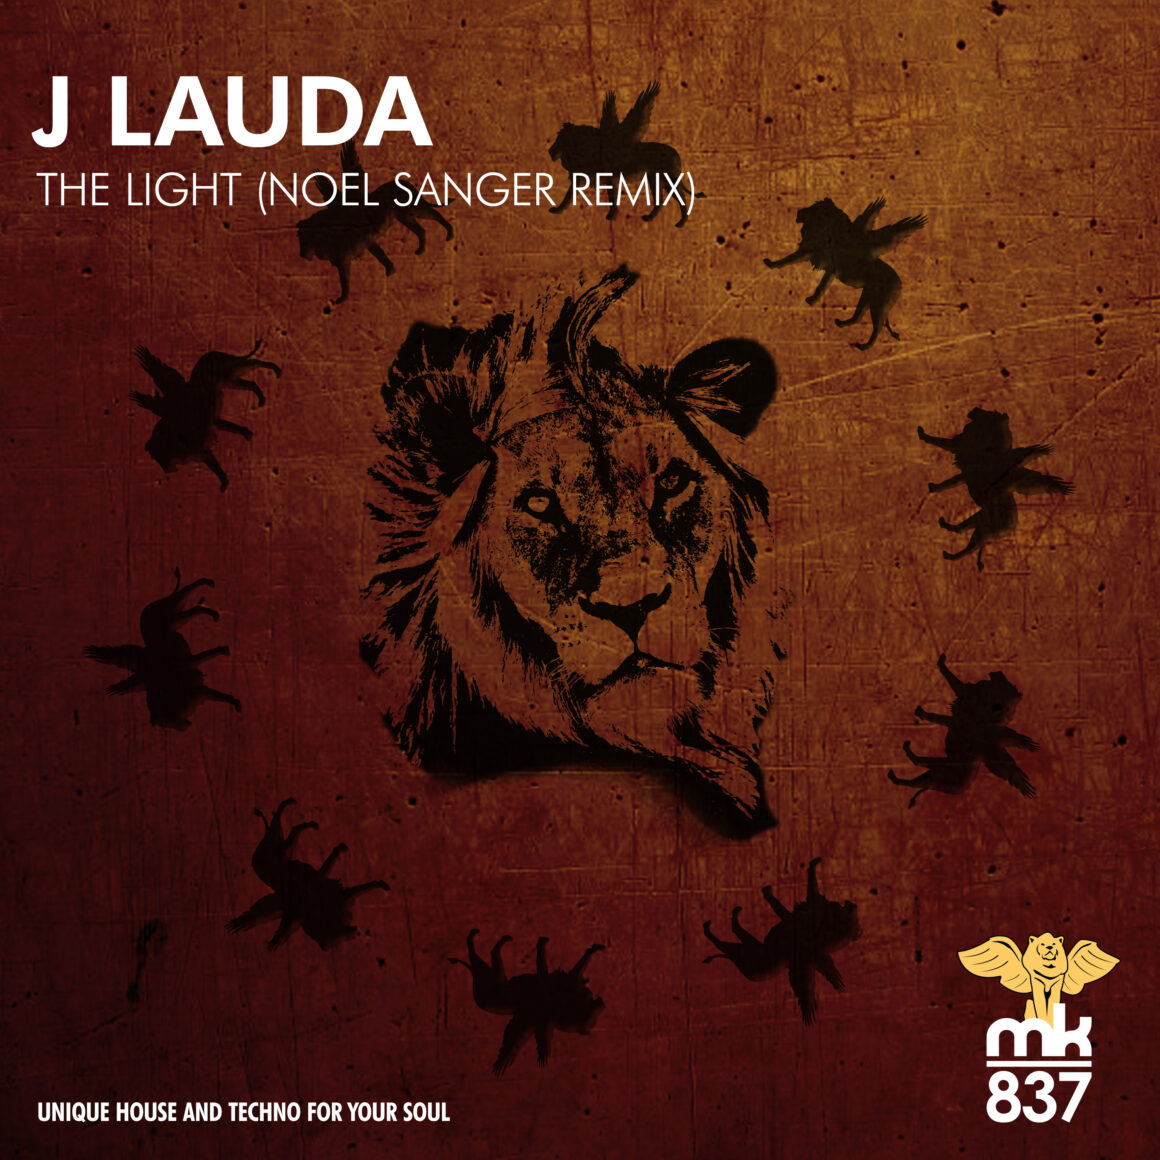 J Lauda - The Light (Noel Sanger Remix)